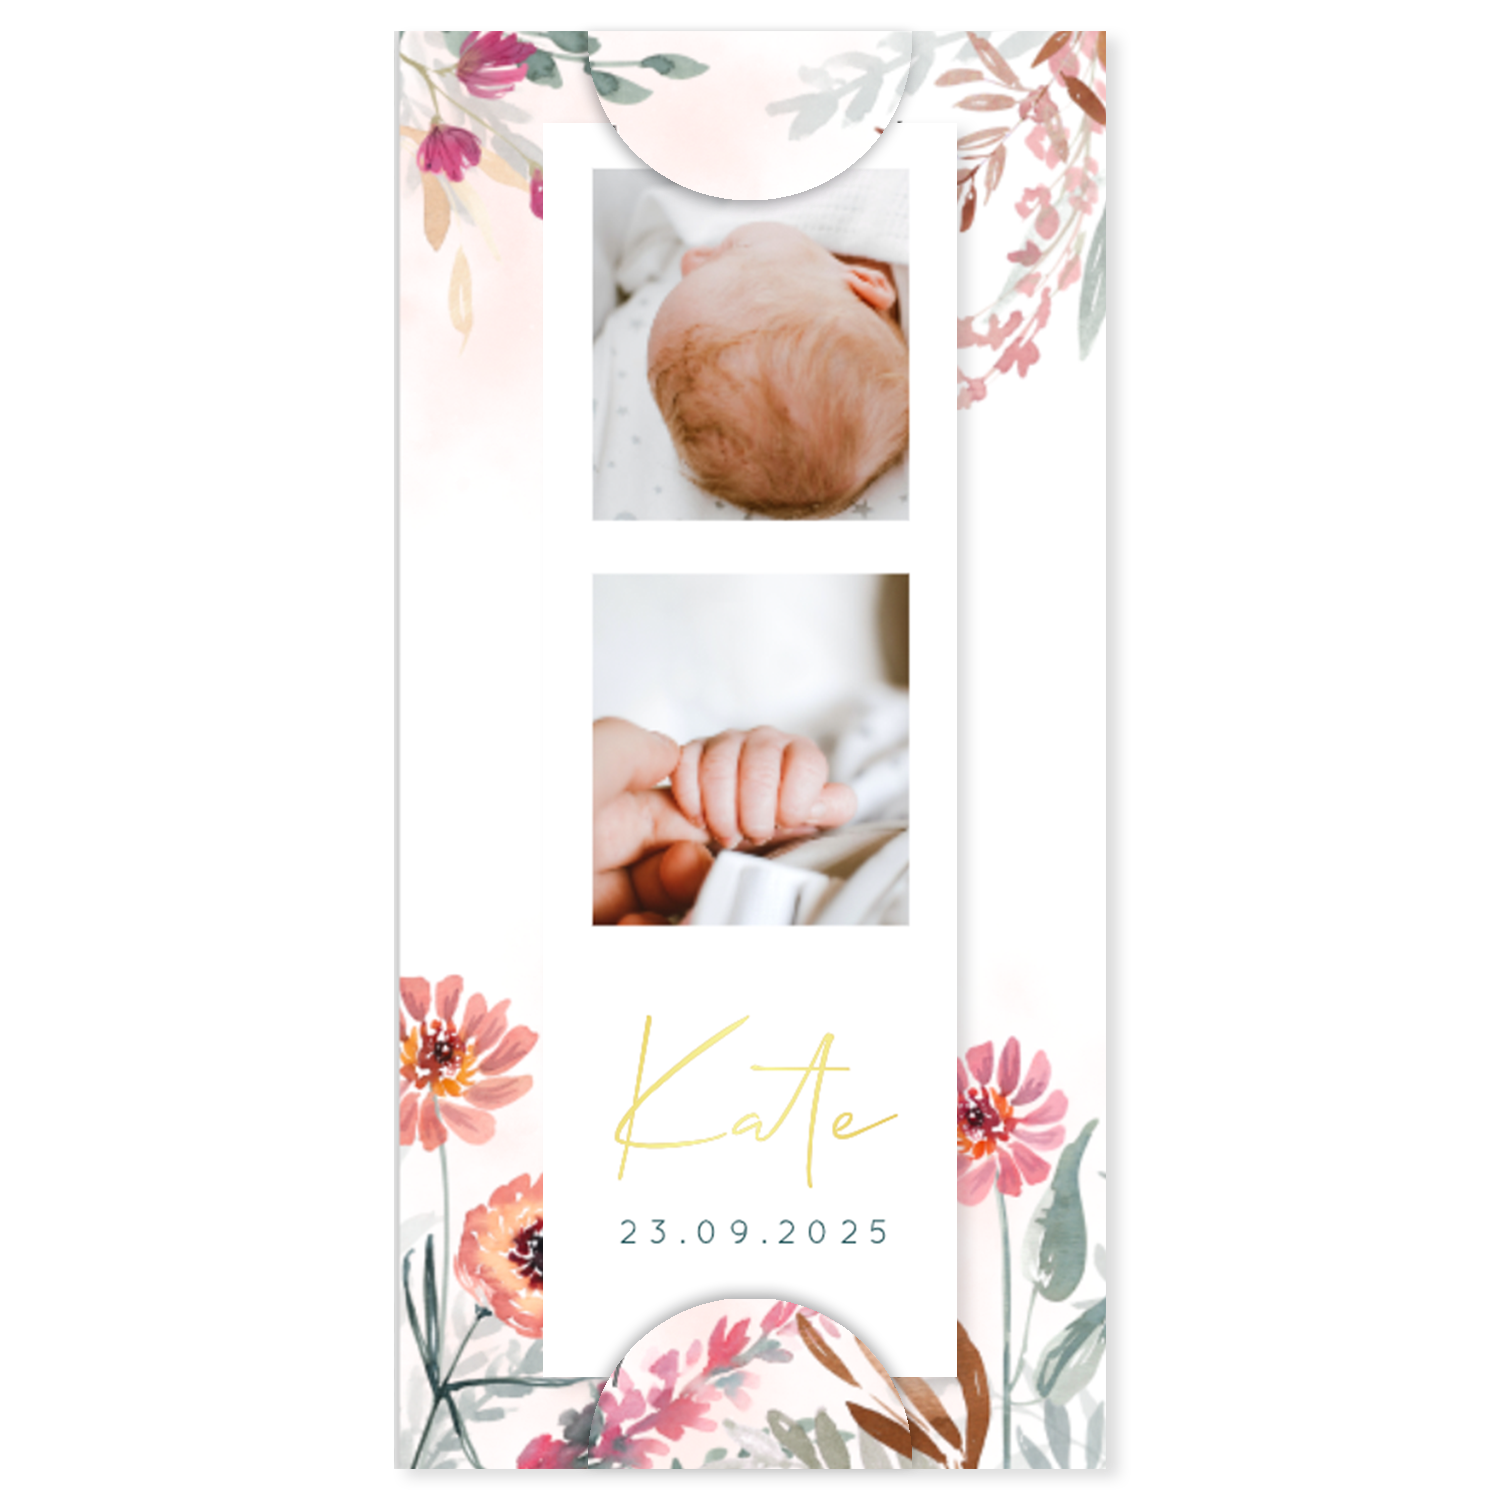 Vrolijk label geboortekaartje met foto's, goudfolie en bloemen